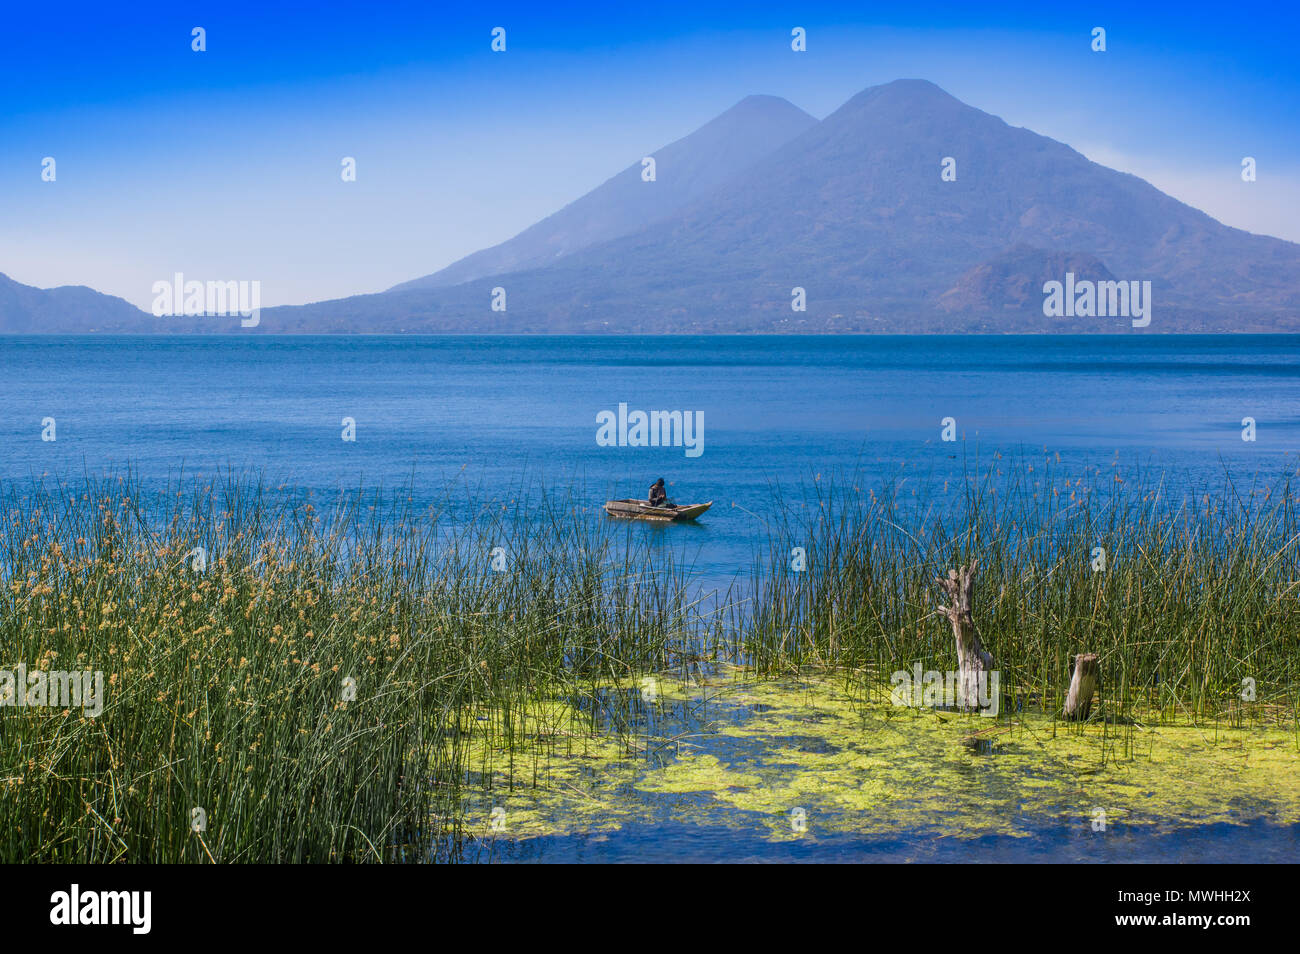 Veduta esterna di totora acquatica di piante al bordo del lago, con il pescatore non identificato in un piccolo barche nel lago Atitlan, con San Pedro vulcano in background Foto Stock